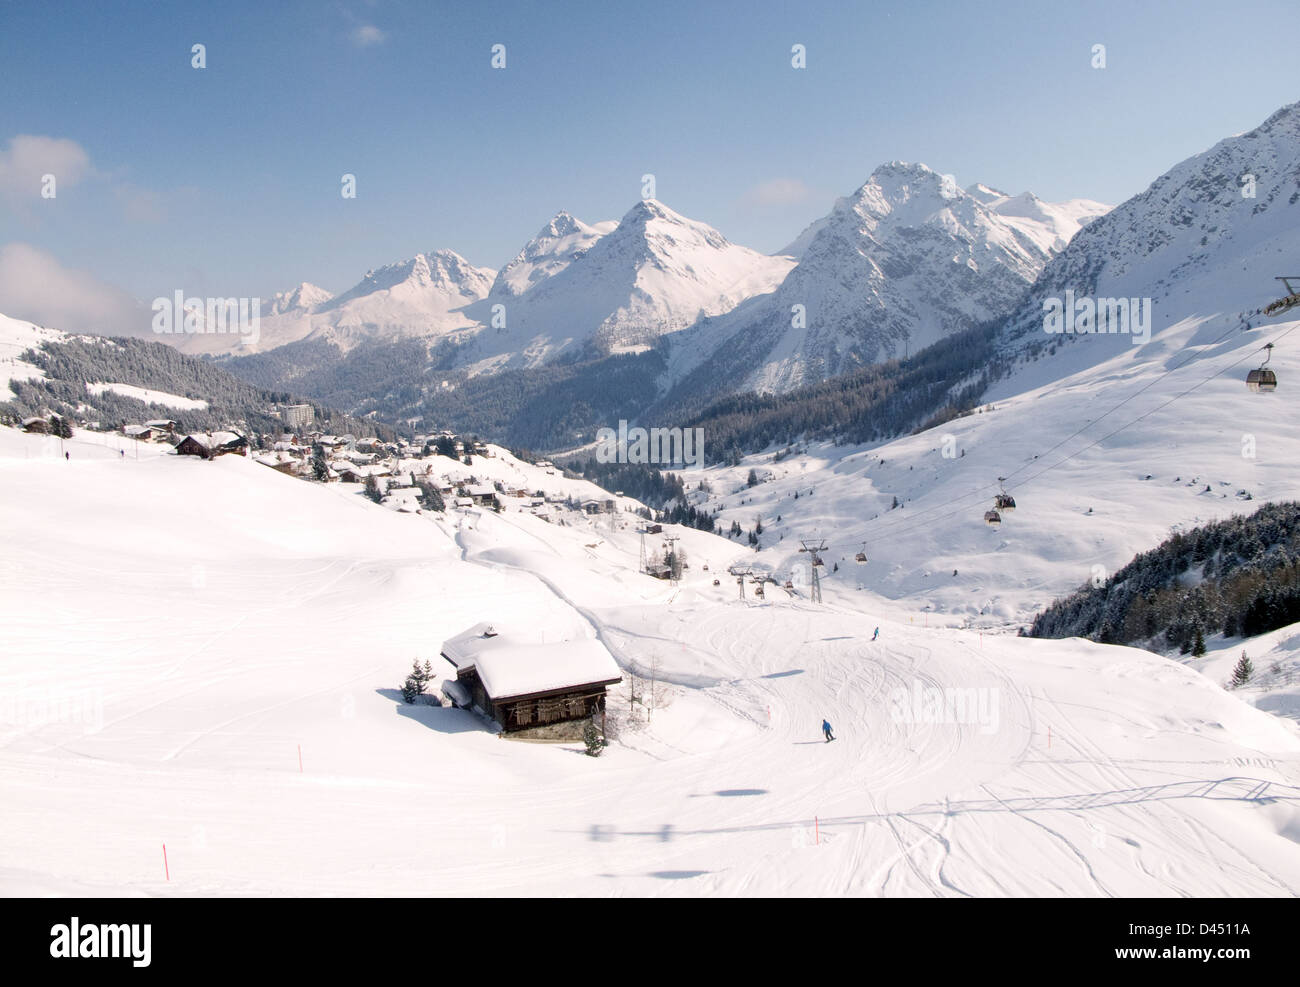 Alpes Suisses avec les gens de la scène Ski et neige sur les montagnes, Arosa, Suisse, Europe Banque D'Images